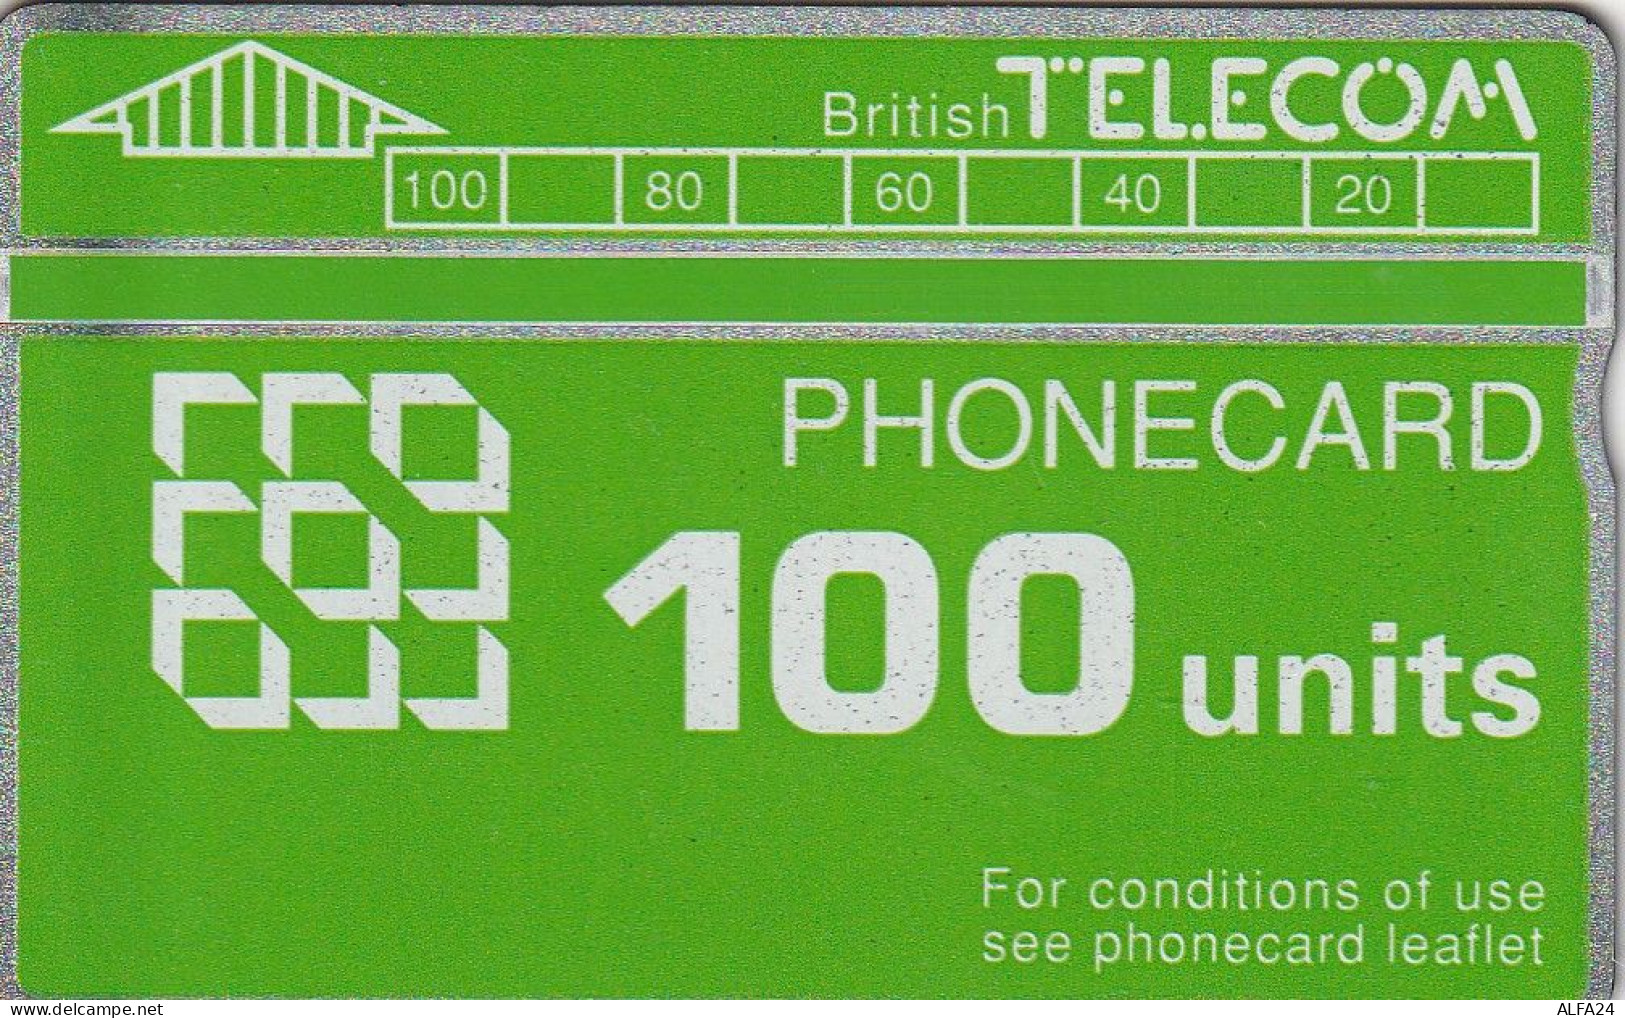 PHONE CARD UK LG (CZ1725 - BT Allgemeine